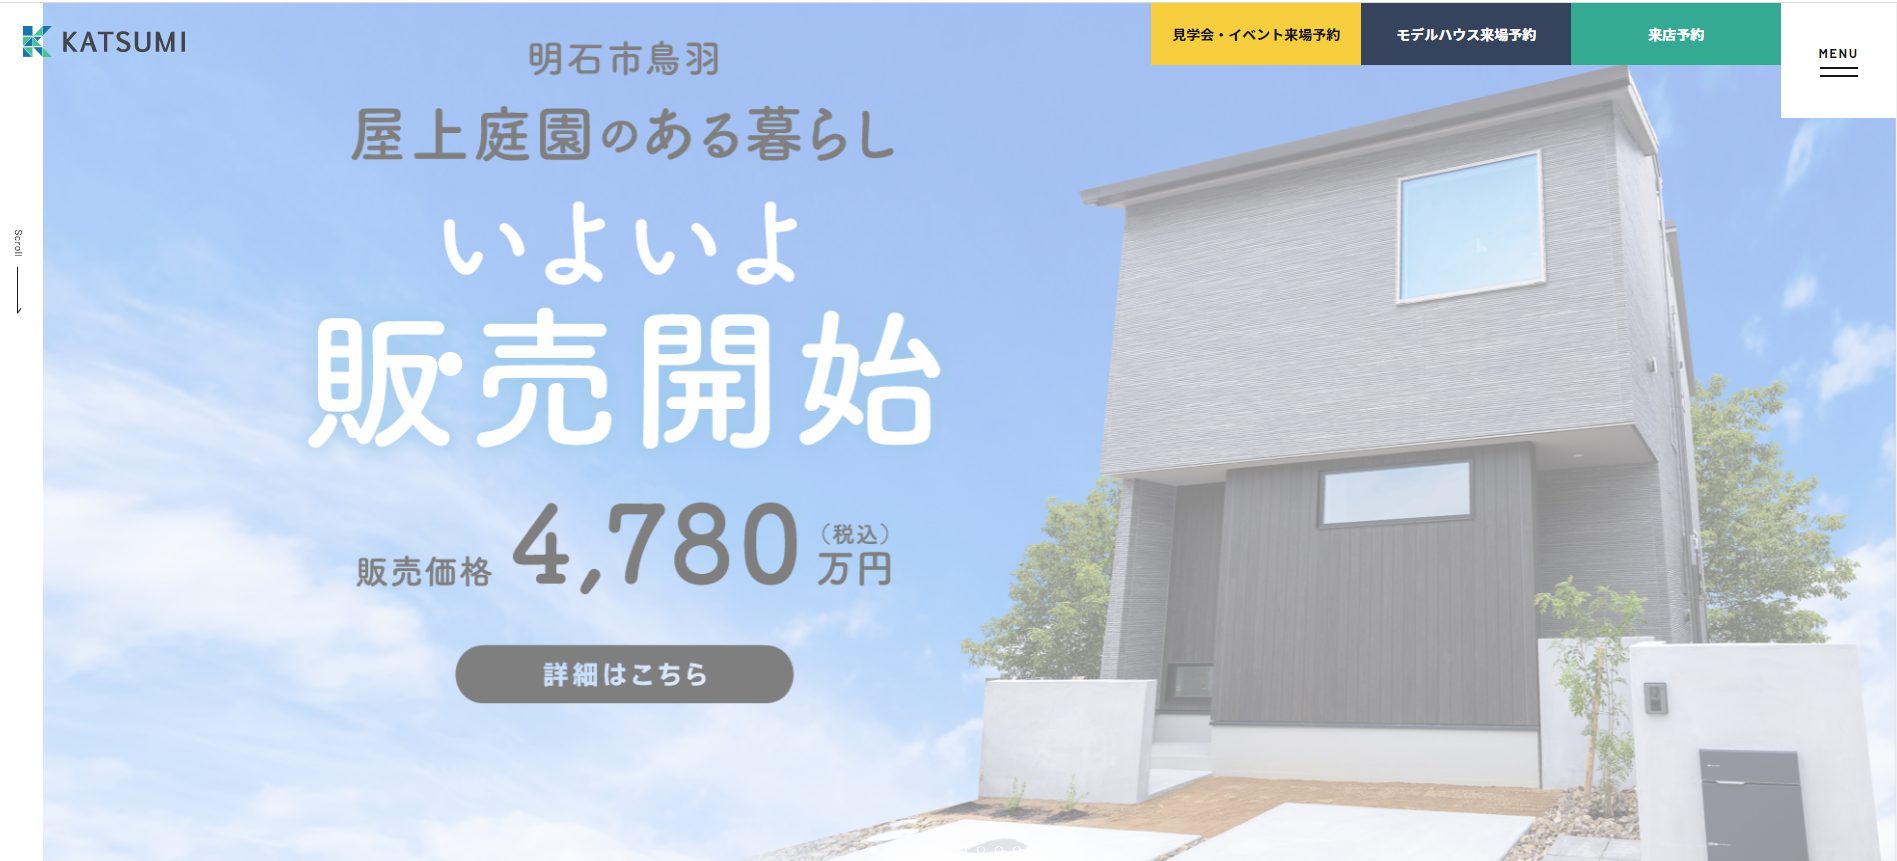 勝美住宅公式サイトの画像